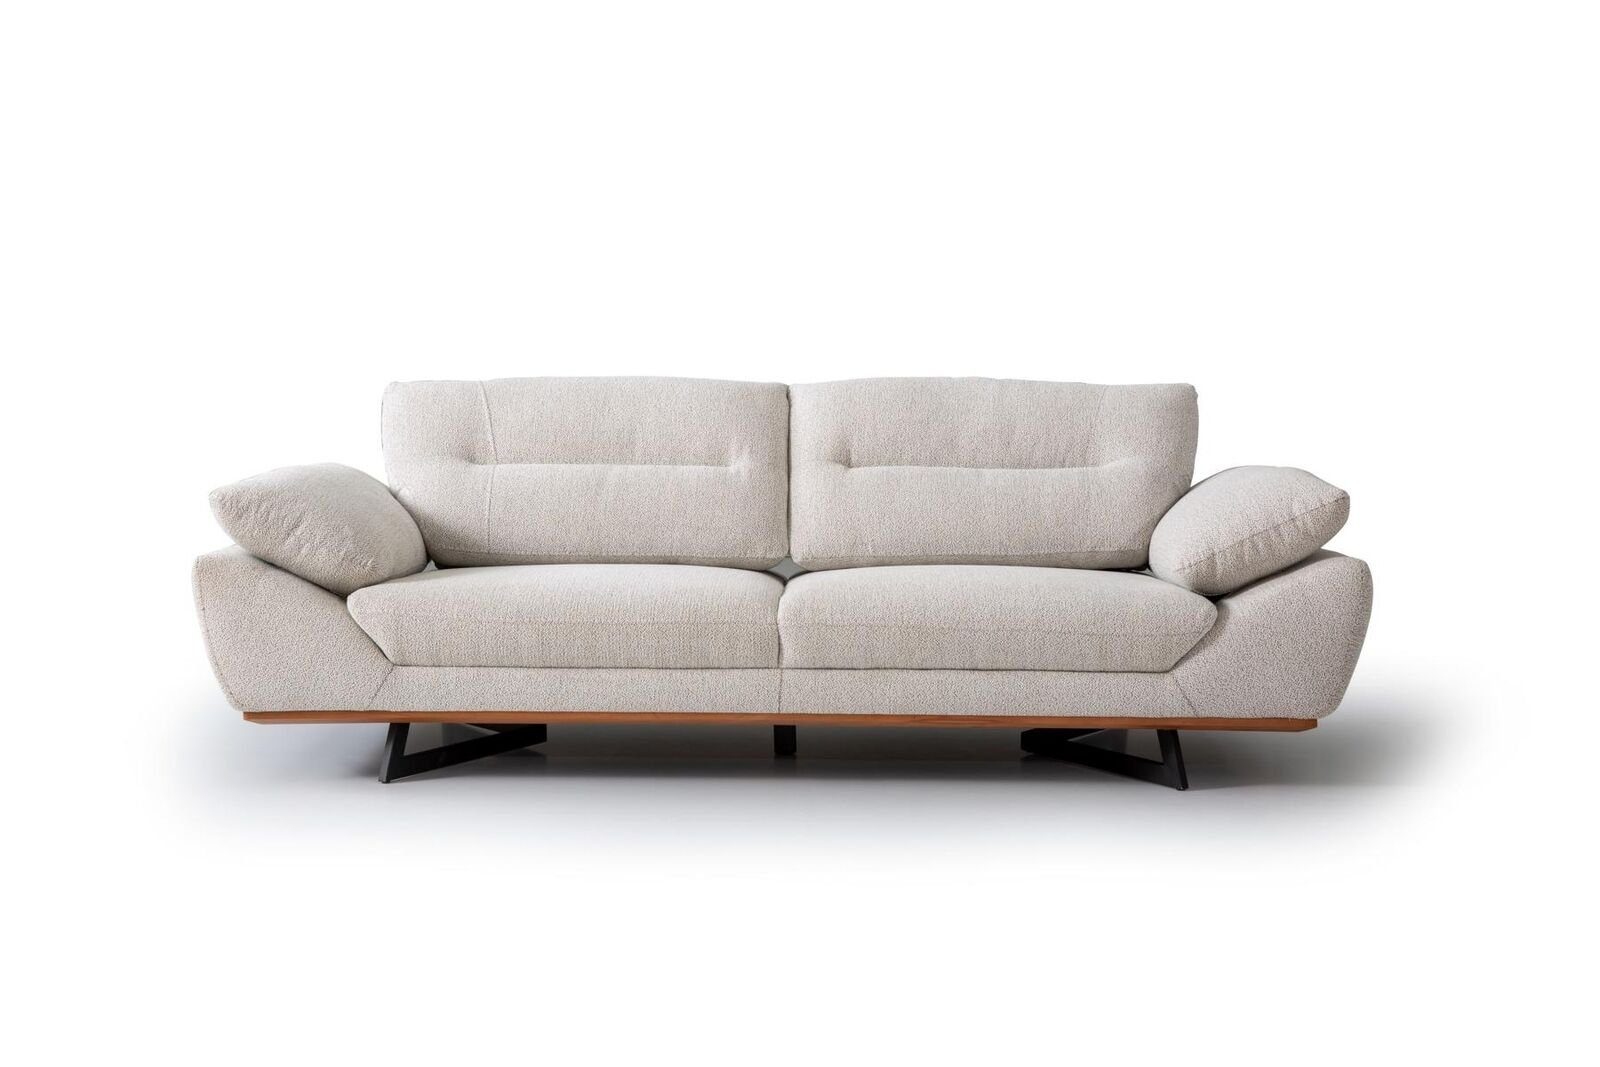 JVmoebel 3-Sitzer Designer Sofa 3 Sitzer Couch Polster Sofas Design Weiß in wohnzimmer, 1 Teile, Made in Europa